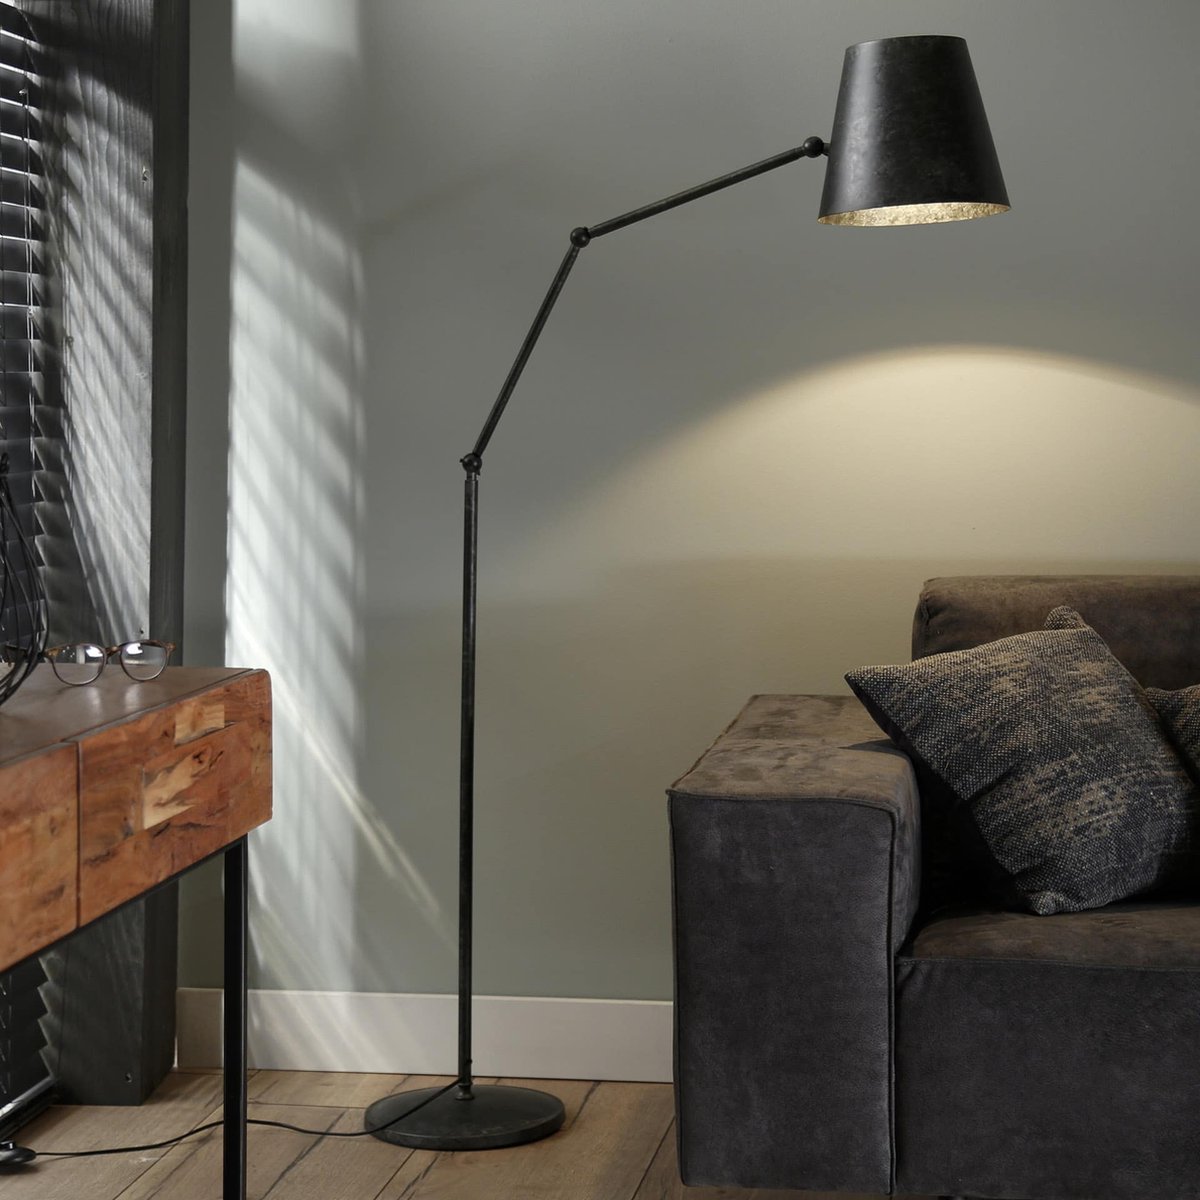 Vloerlamp knik | 1 lichts | zwart | metaal | 152 cm | verstelbaar | staande lamp / vloerlamp | modern / sfeervol design